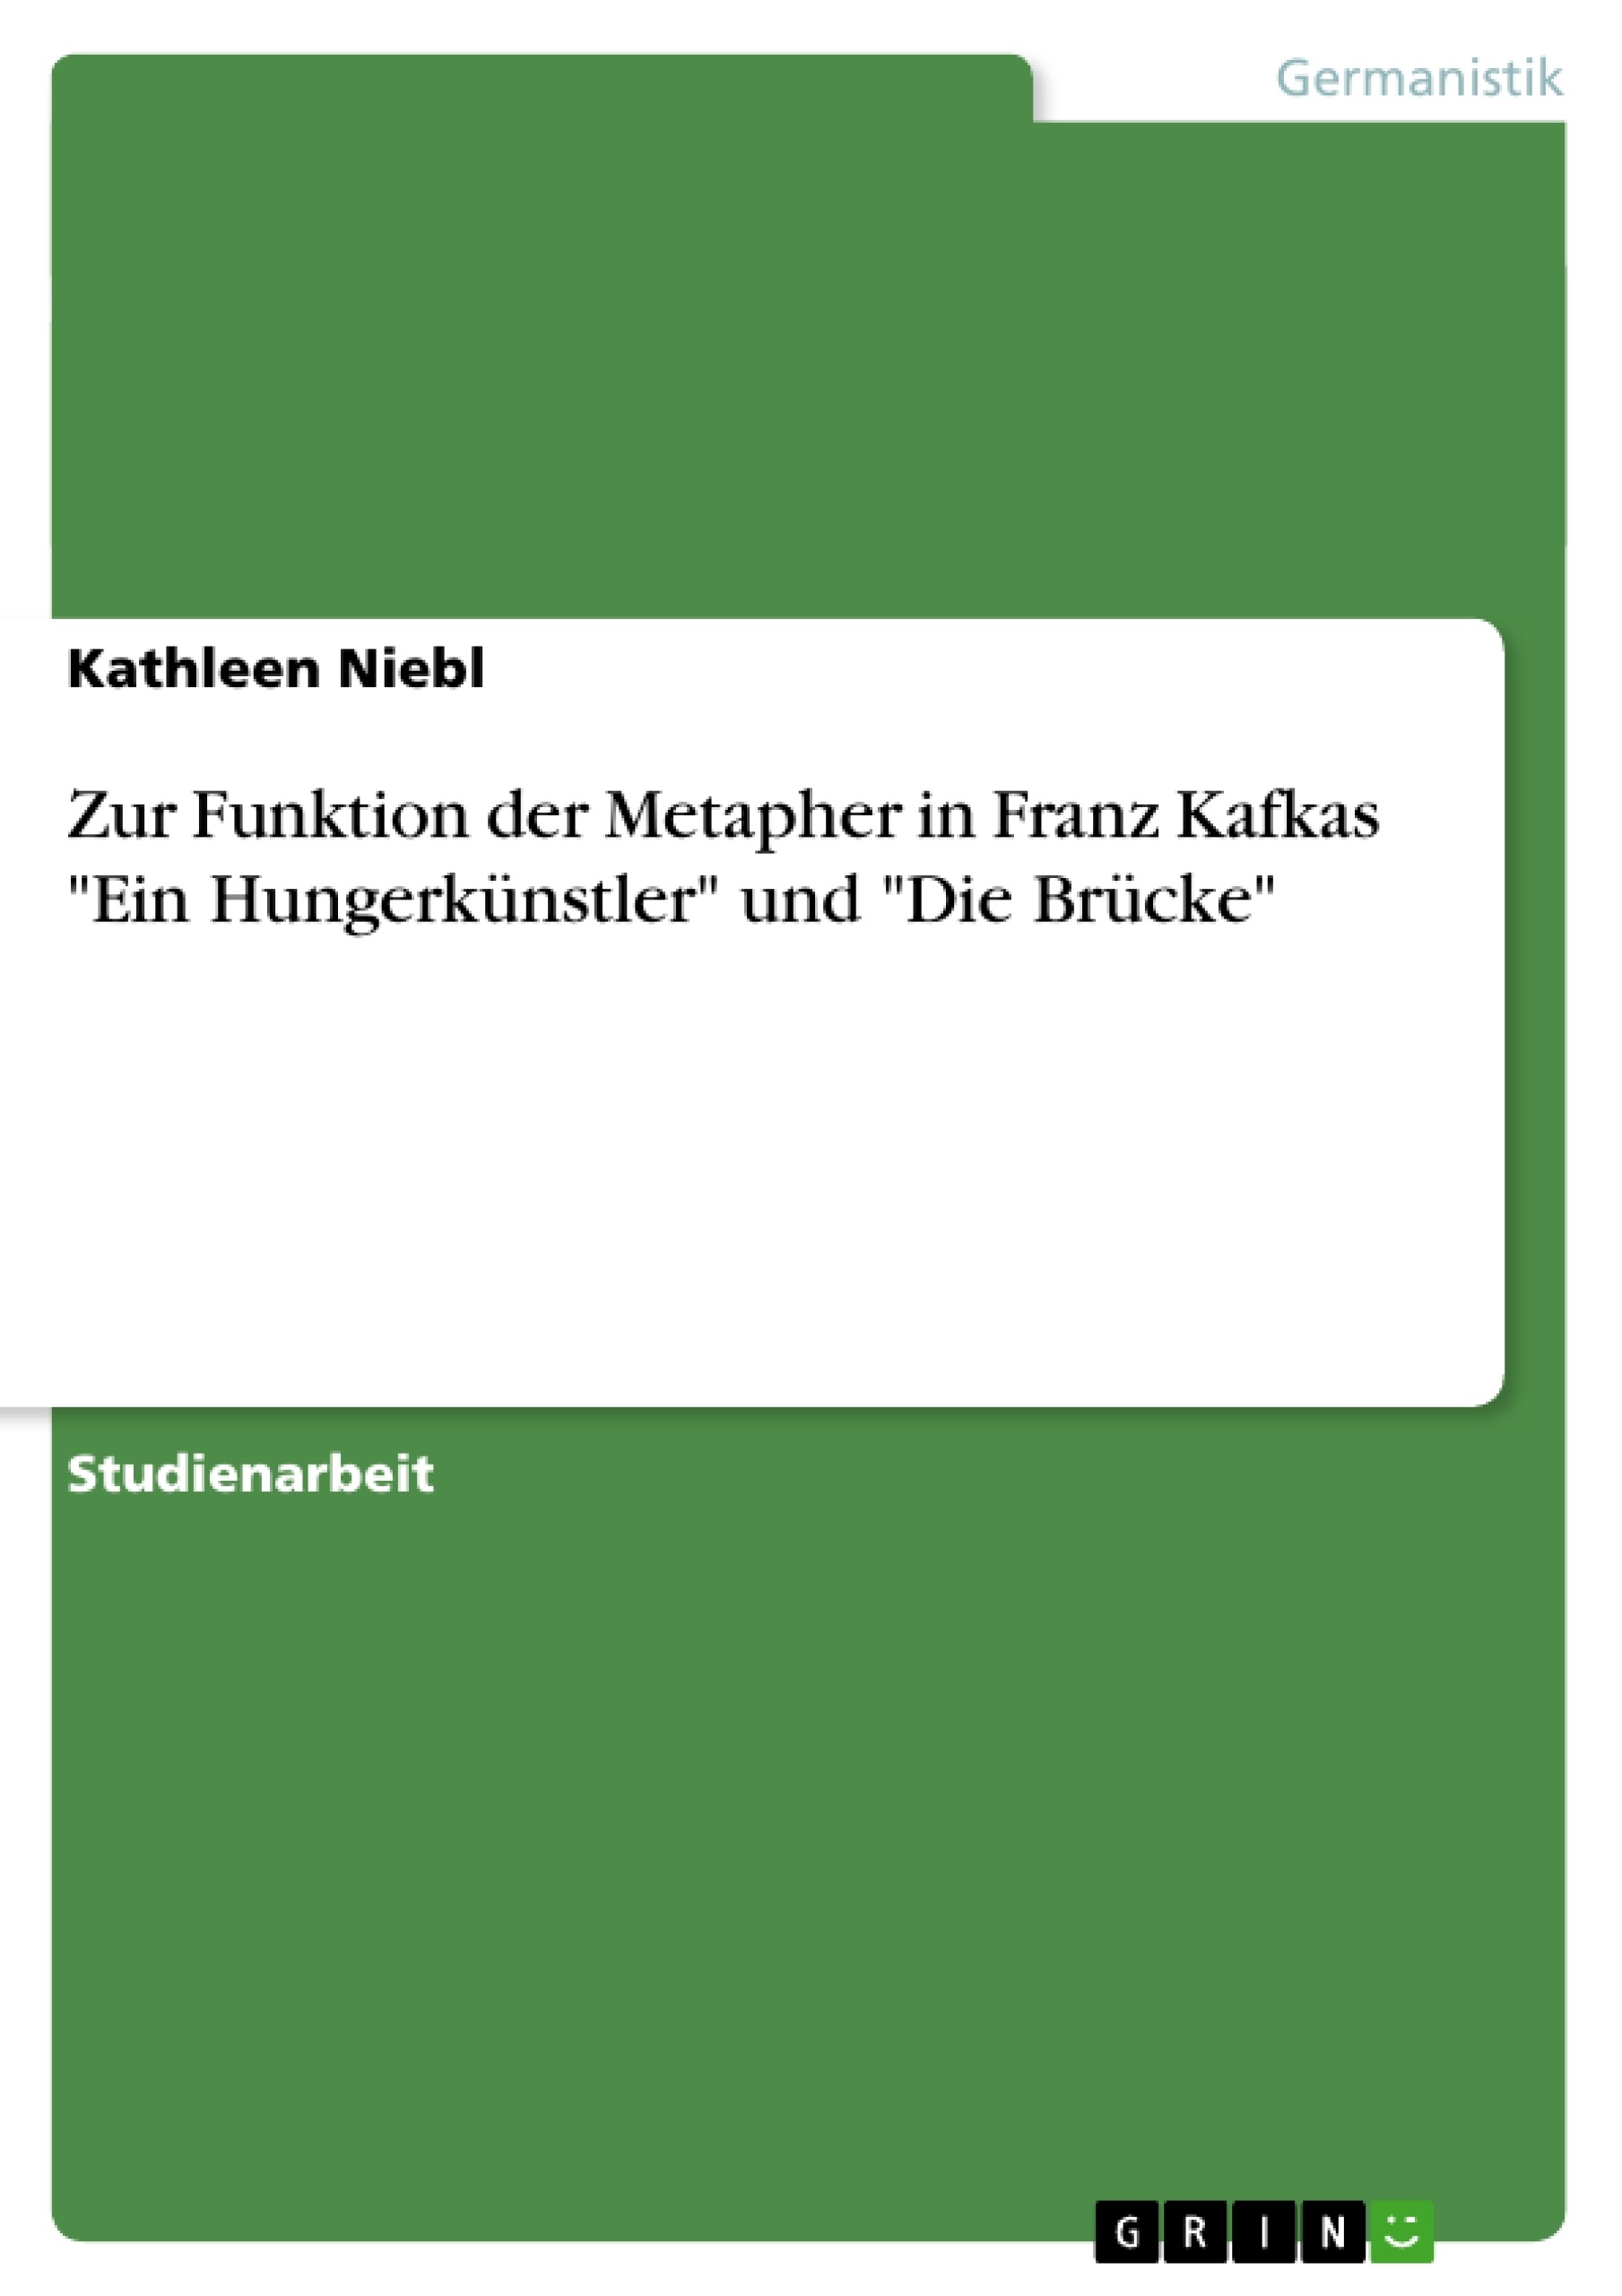 Titre: Zur Funktion der Metapher in Franz Kafkas "Ein Hungerkünstler" und "Die Brücke"